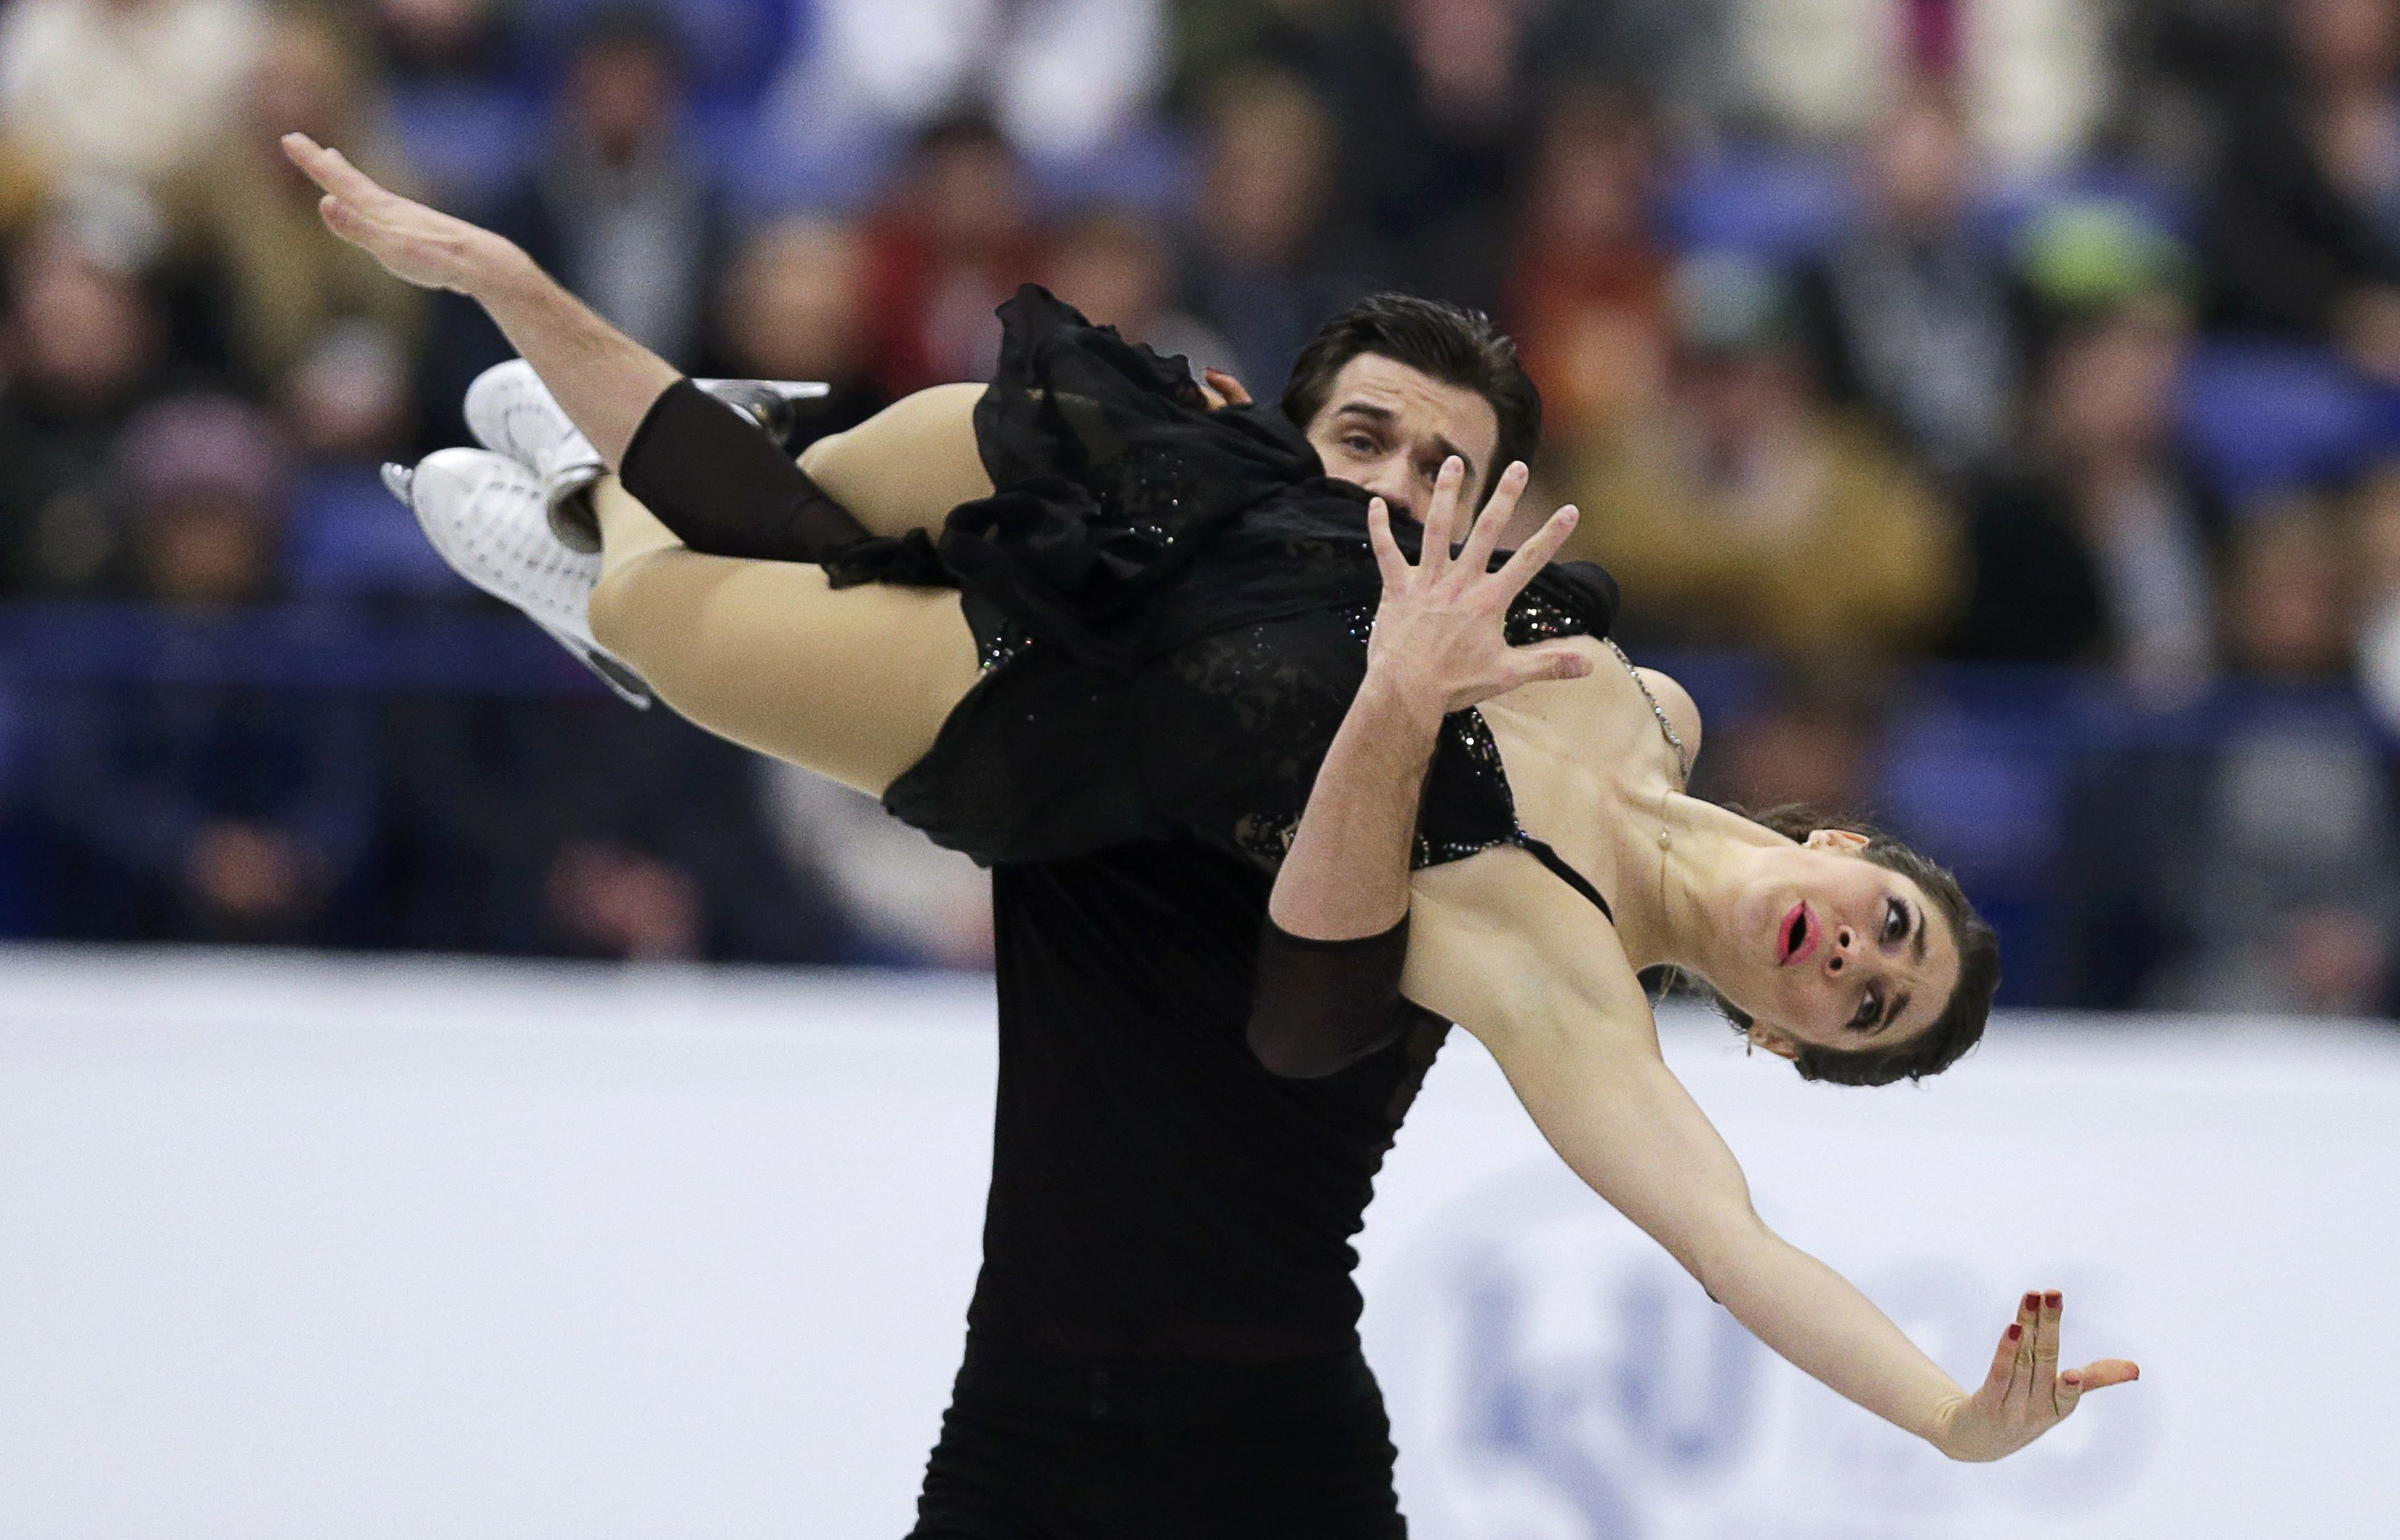 بطولة كأس الأمم الأوروبية 2017 للرقص الحر على الجليد (11)